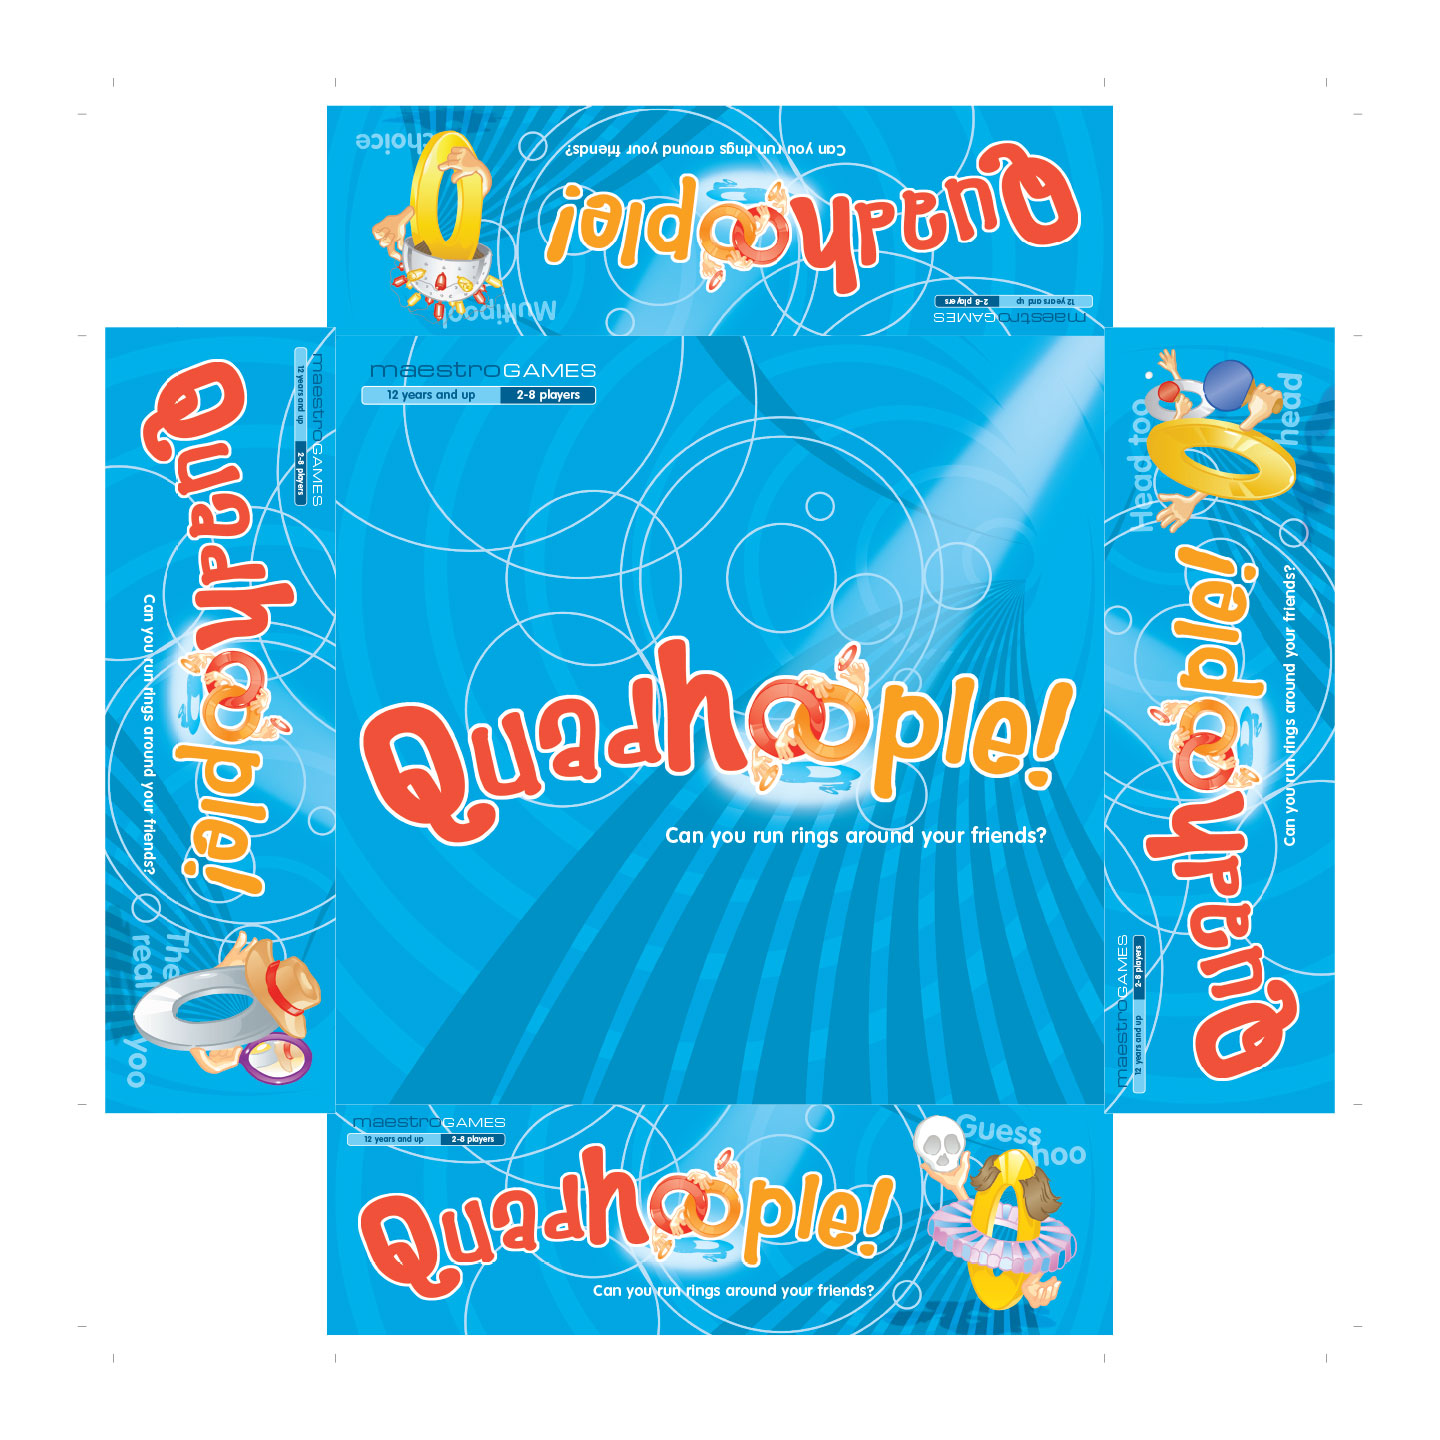 Quadhooople! - Packaging Design